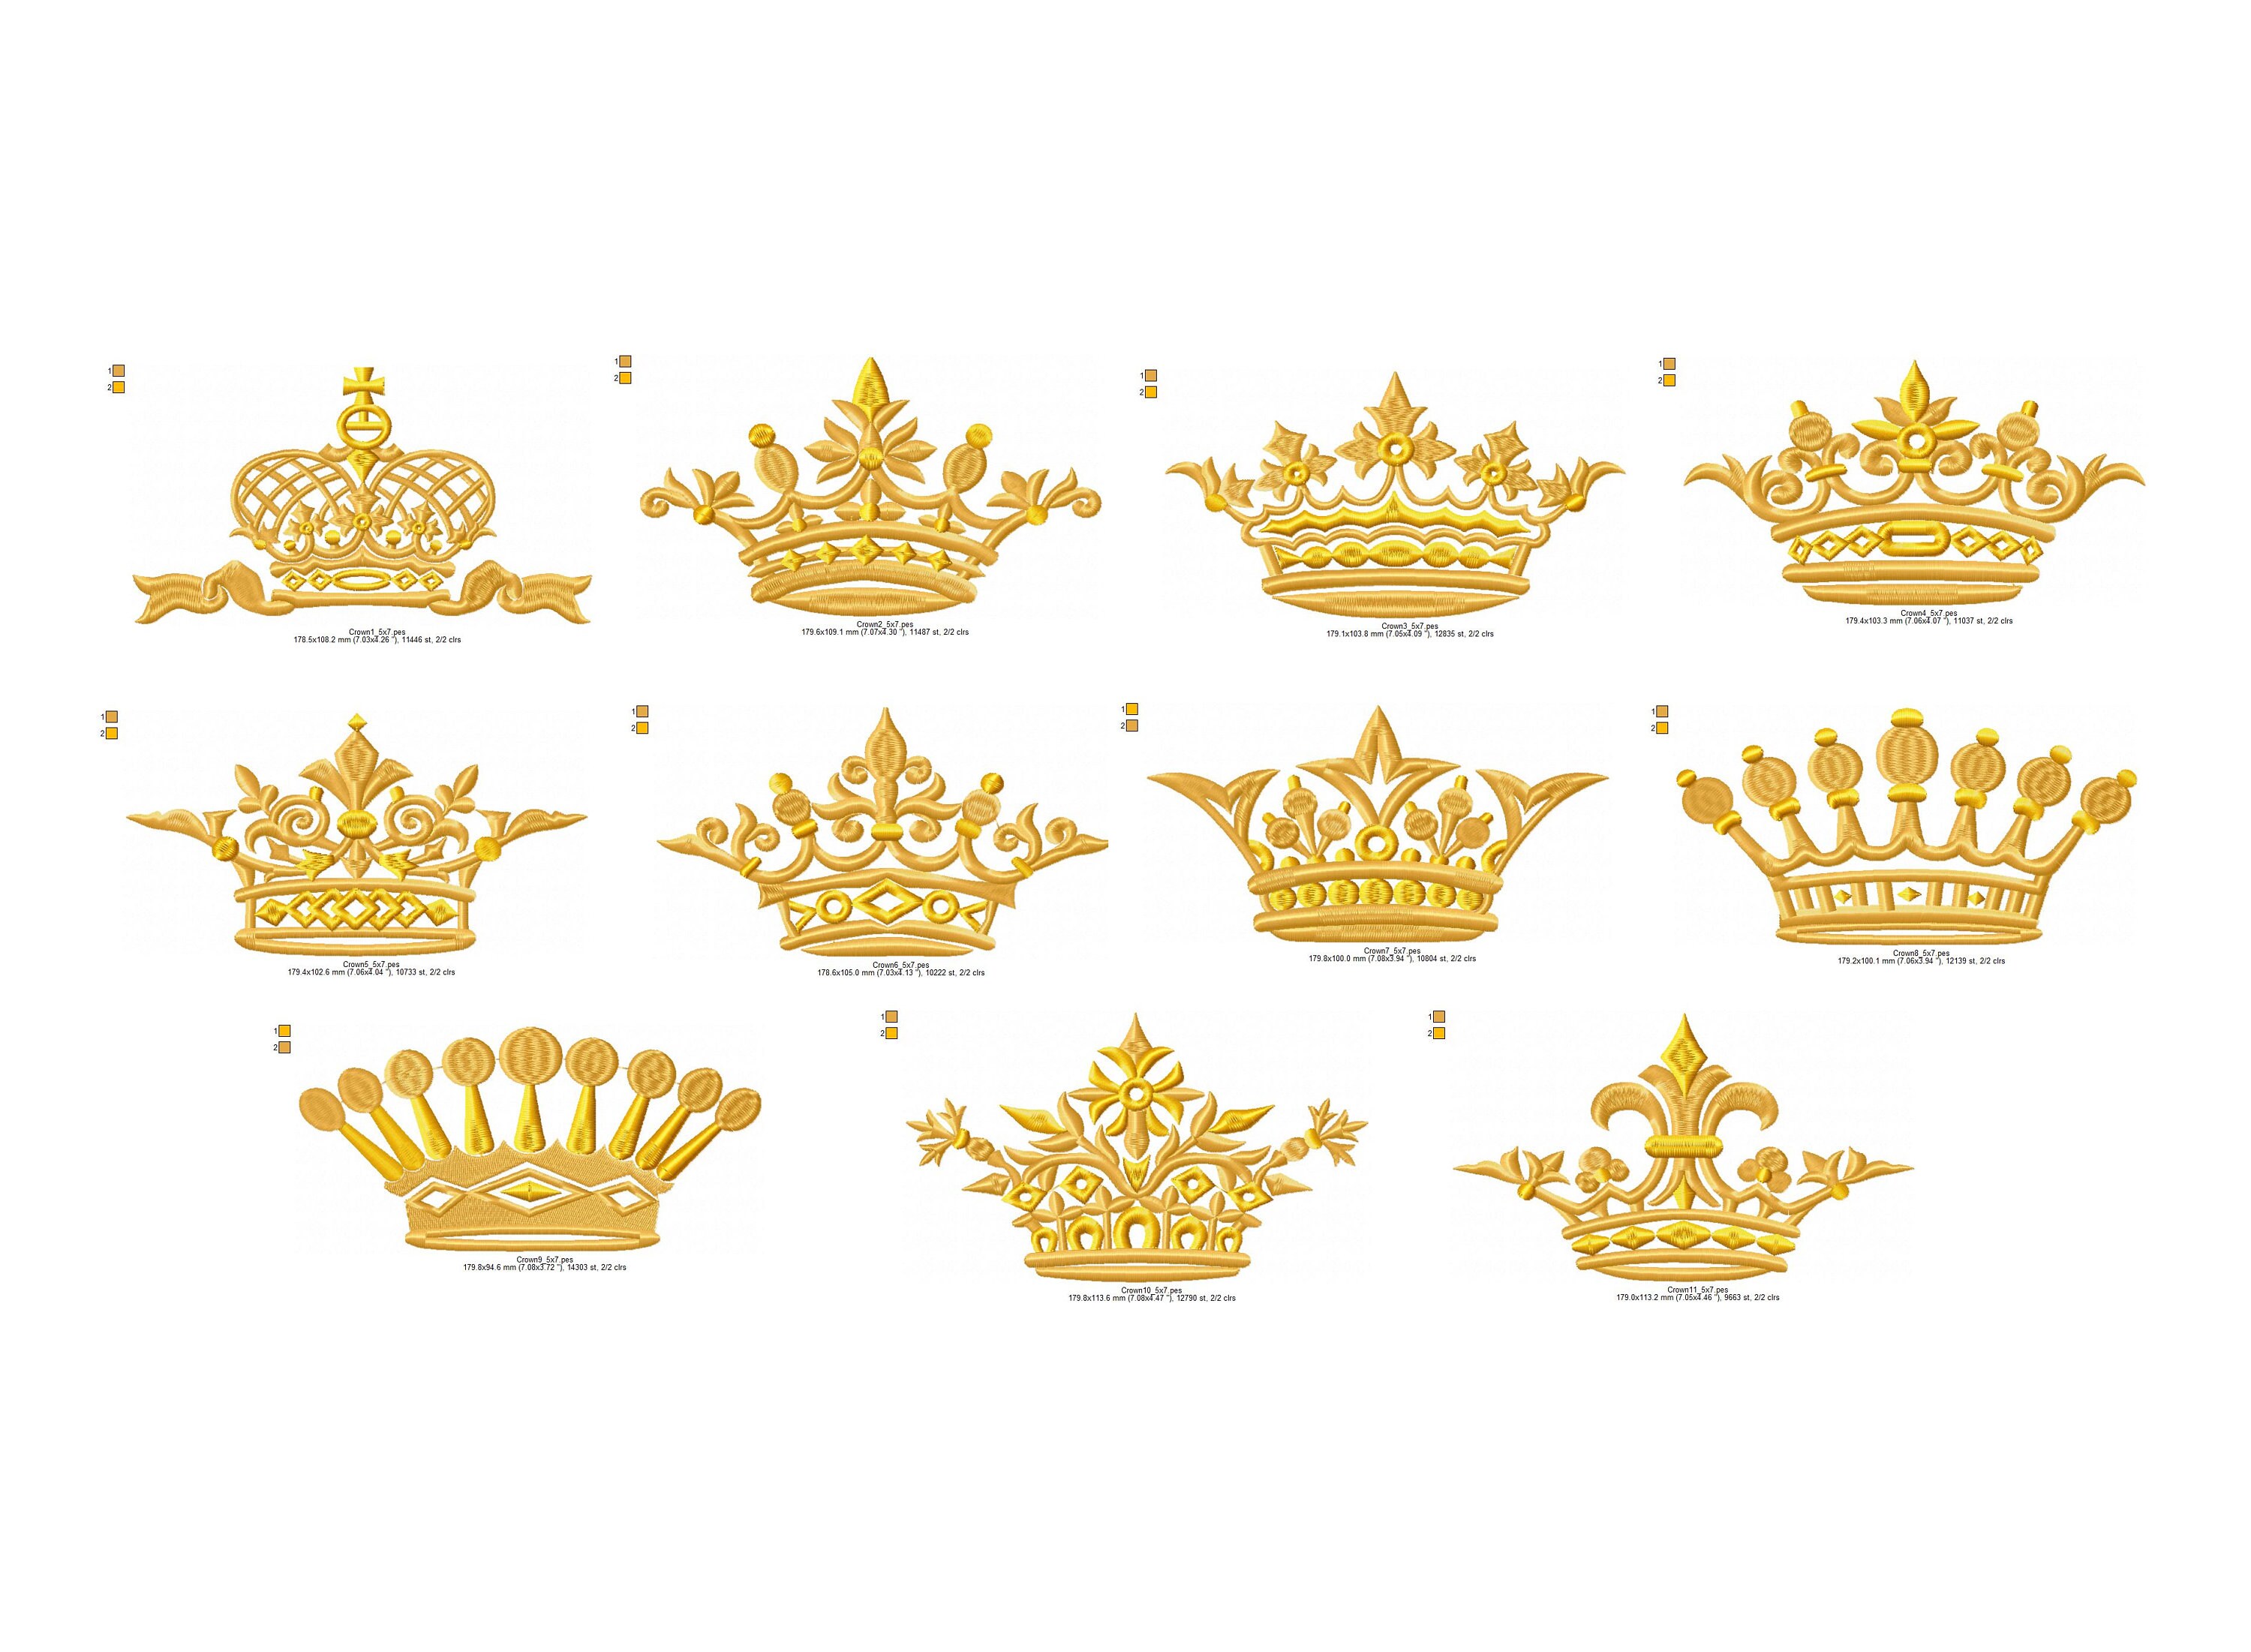 KINGS CROWN Metal Stamp, 6 mm, Royal Crown, Hand Stamping